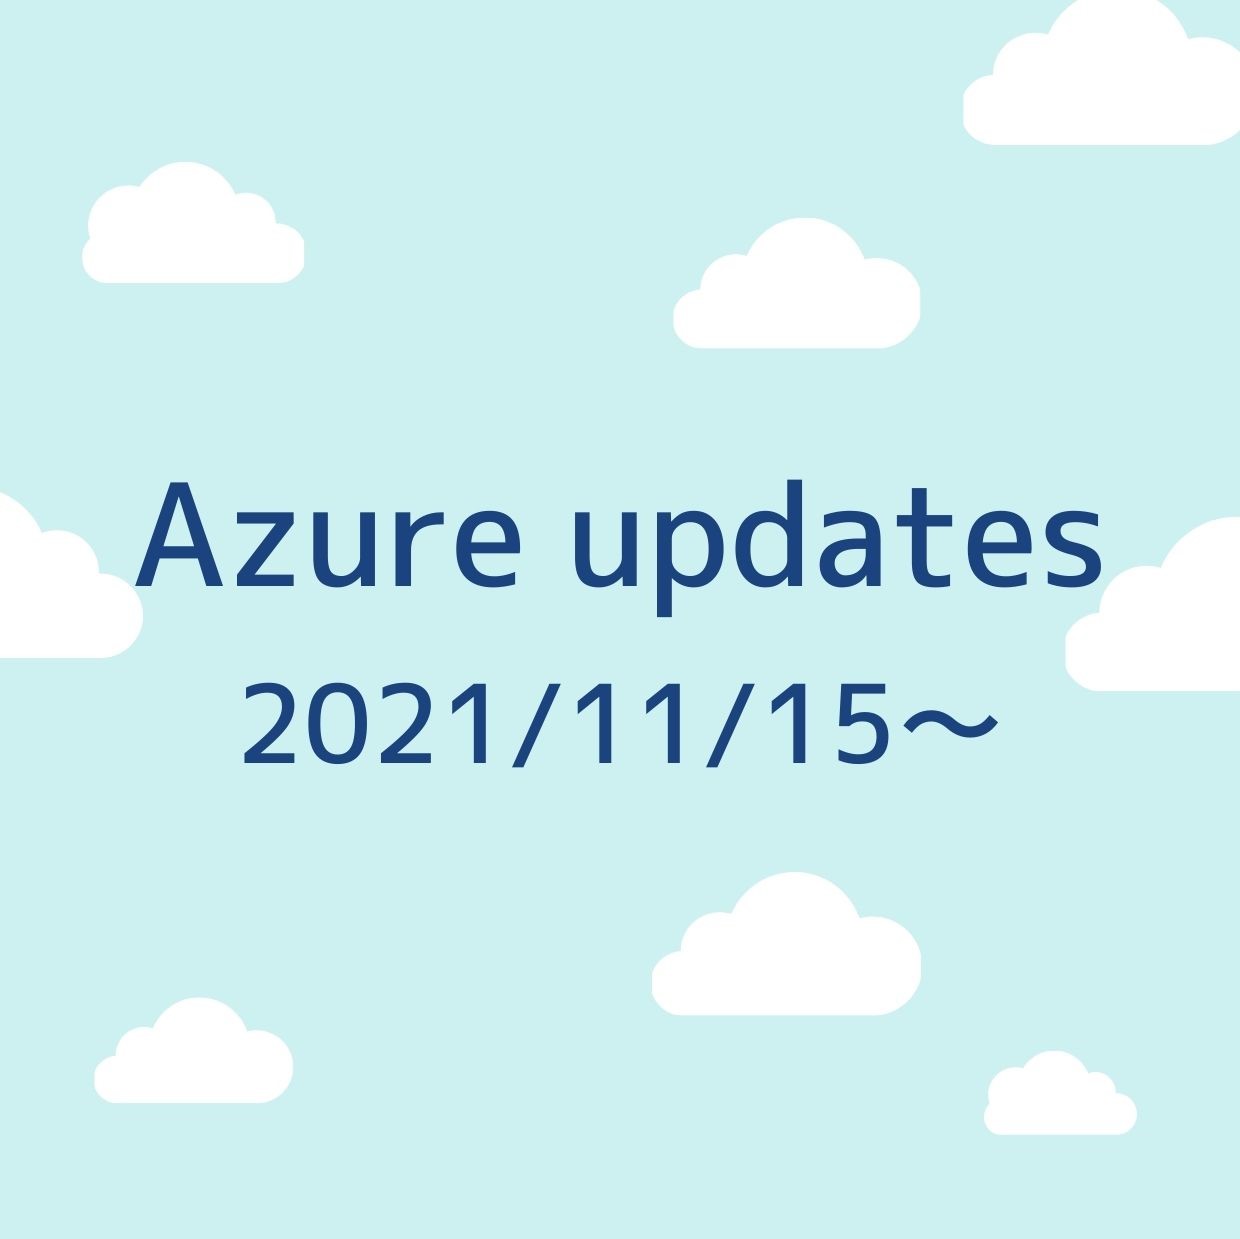 2021/11/15週の Azure updates 日本語速報